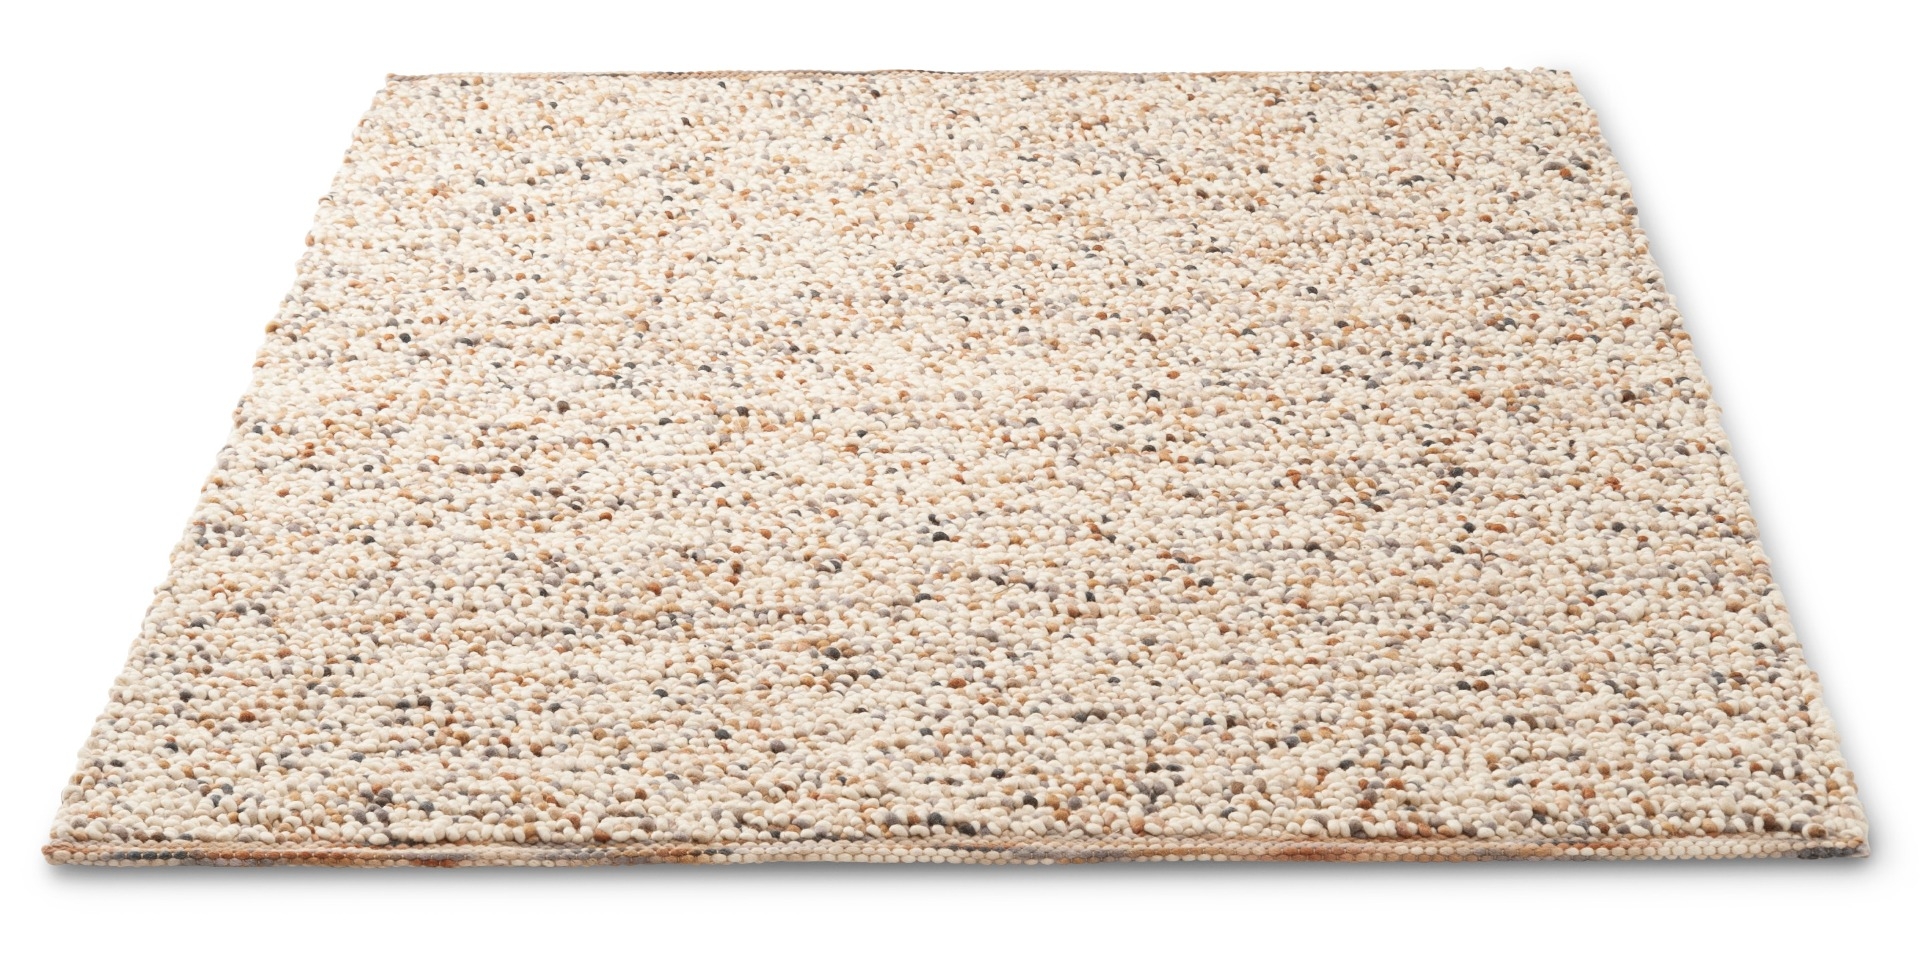 Шерстяной тканый ковер Pebble Naturel Sand